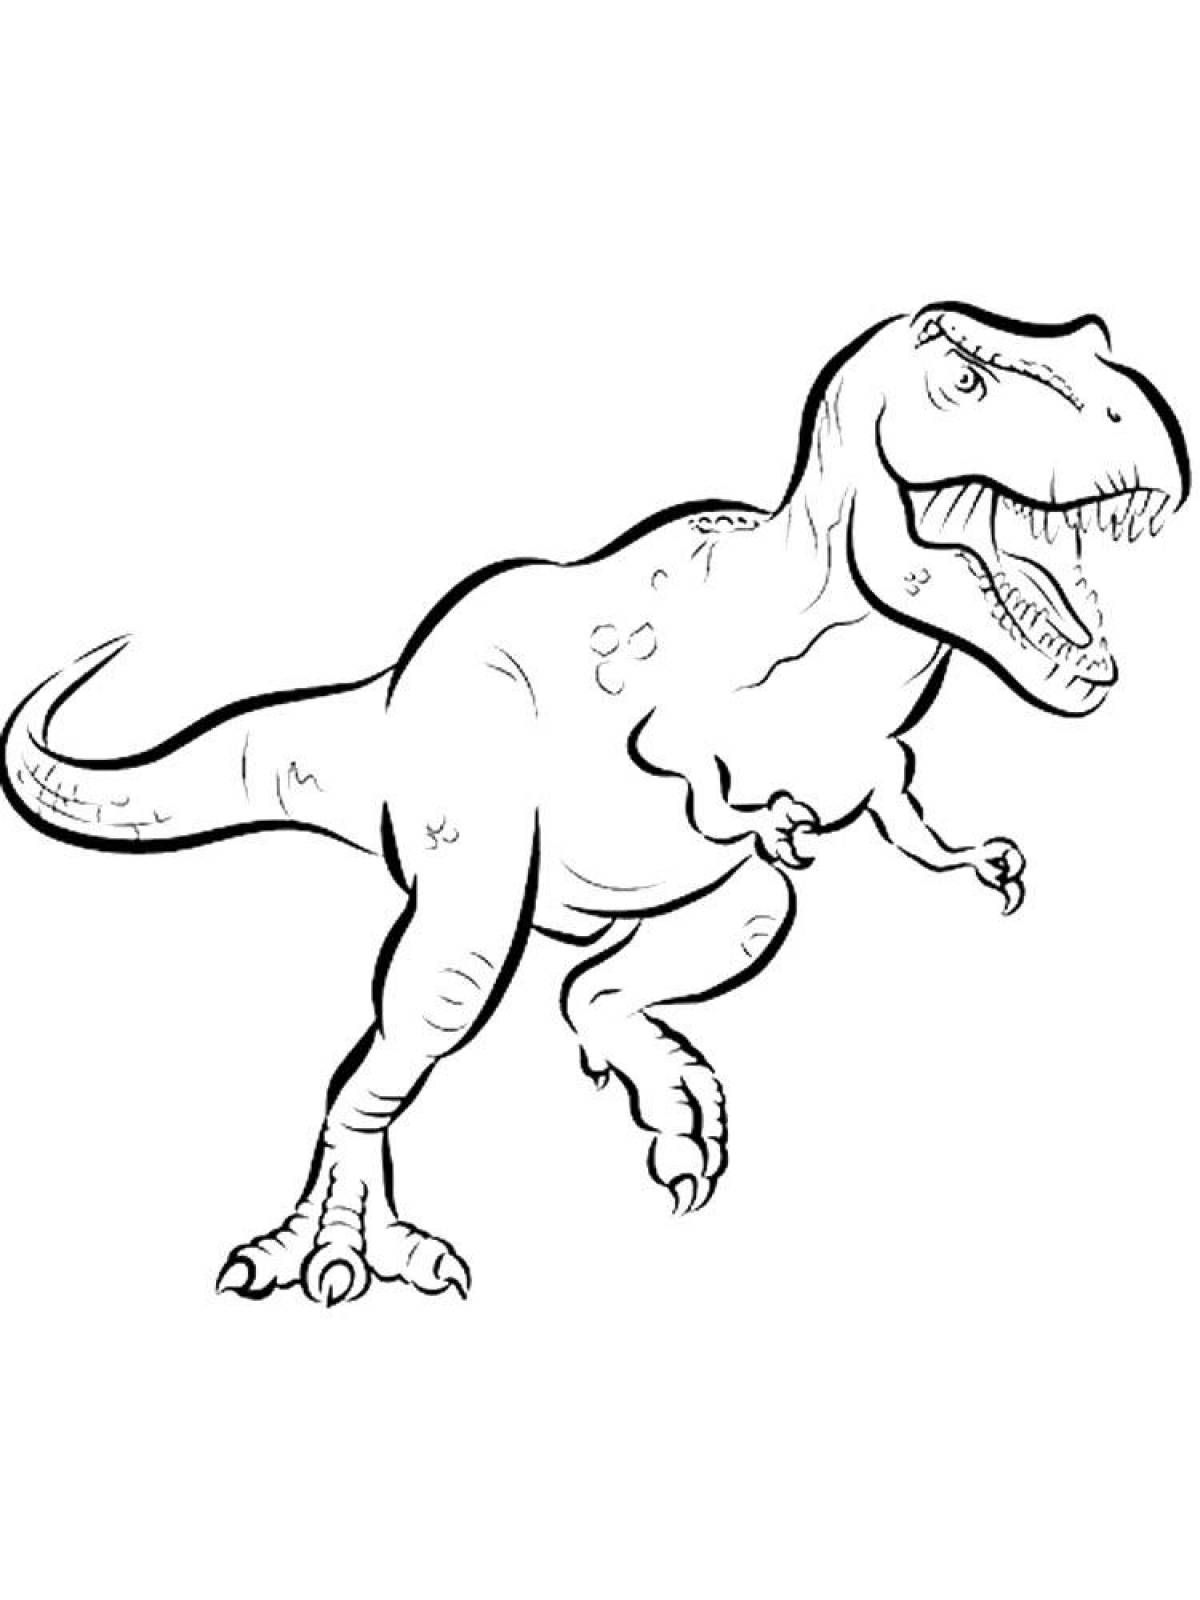 Tyrannosaurus rex #4